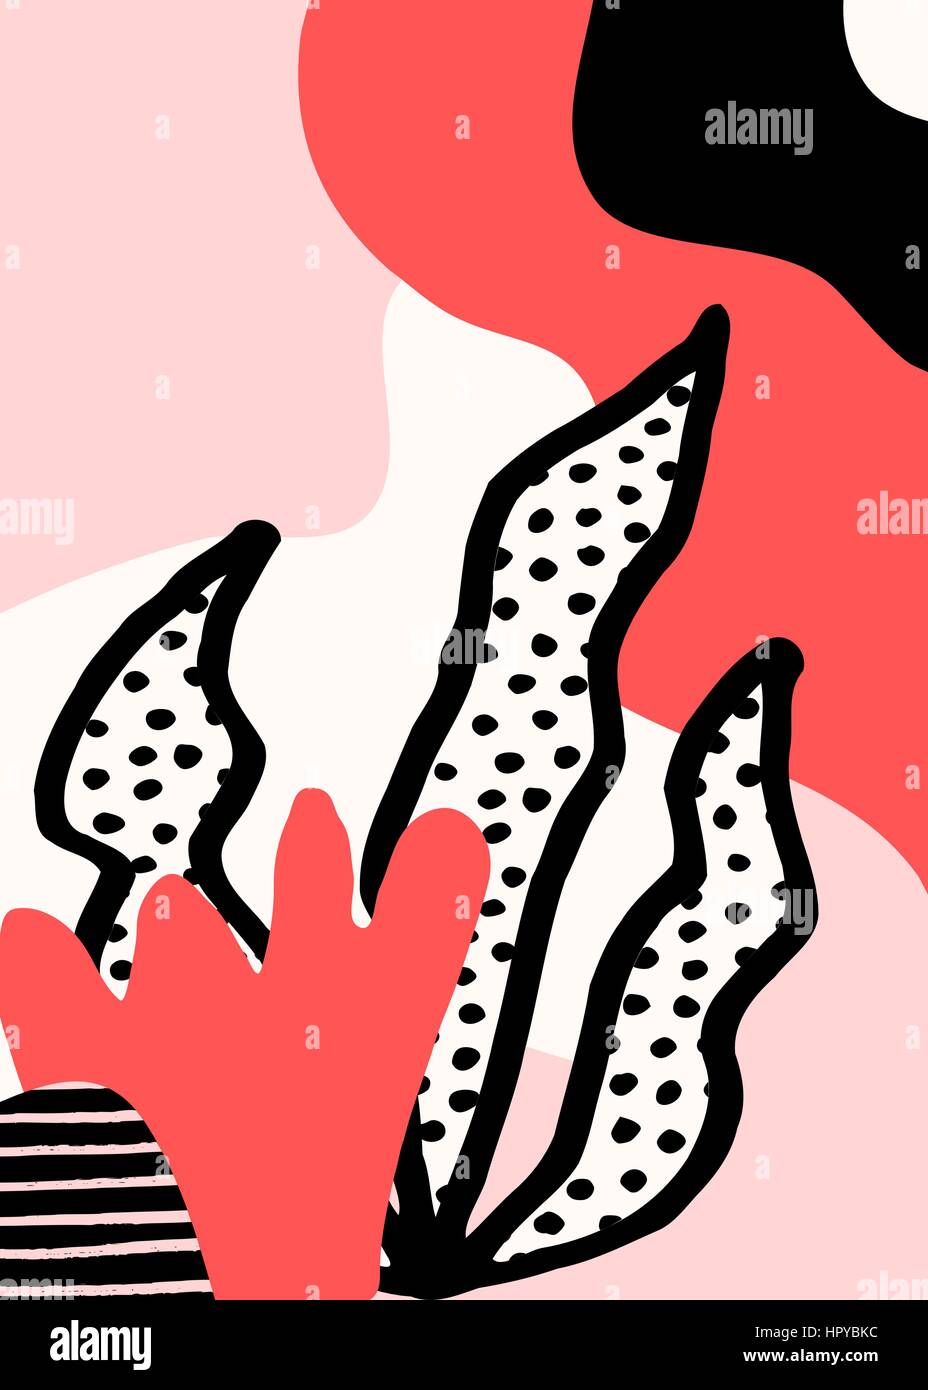 Collage stile design con abstract e forme organiche in rosa pastello, rosso, nero e crema. Abstract tessile, carta da imballaggio, wall art design. Illustrazione Vettoriale